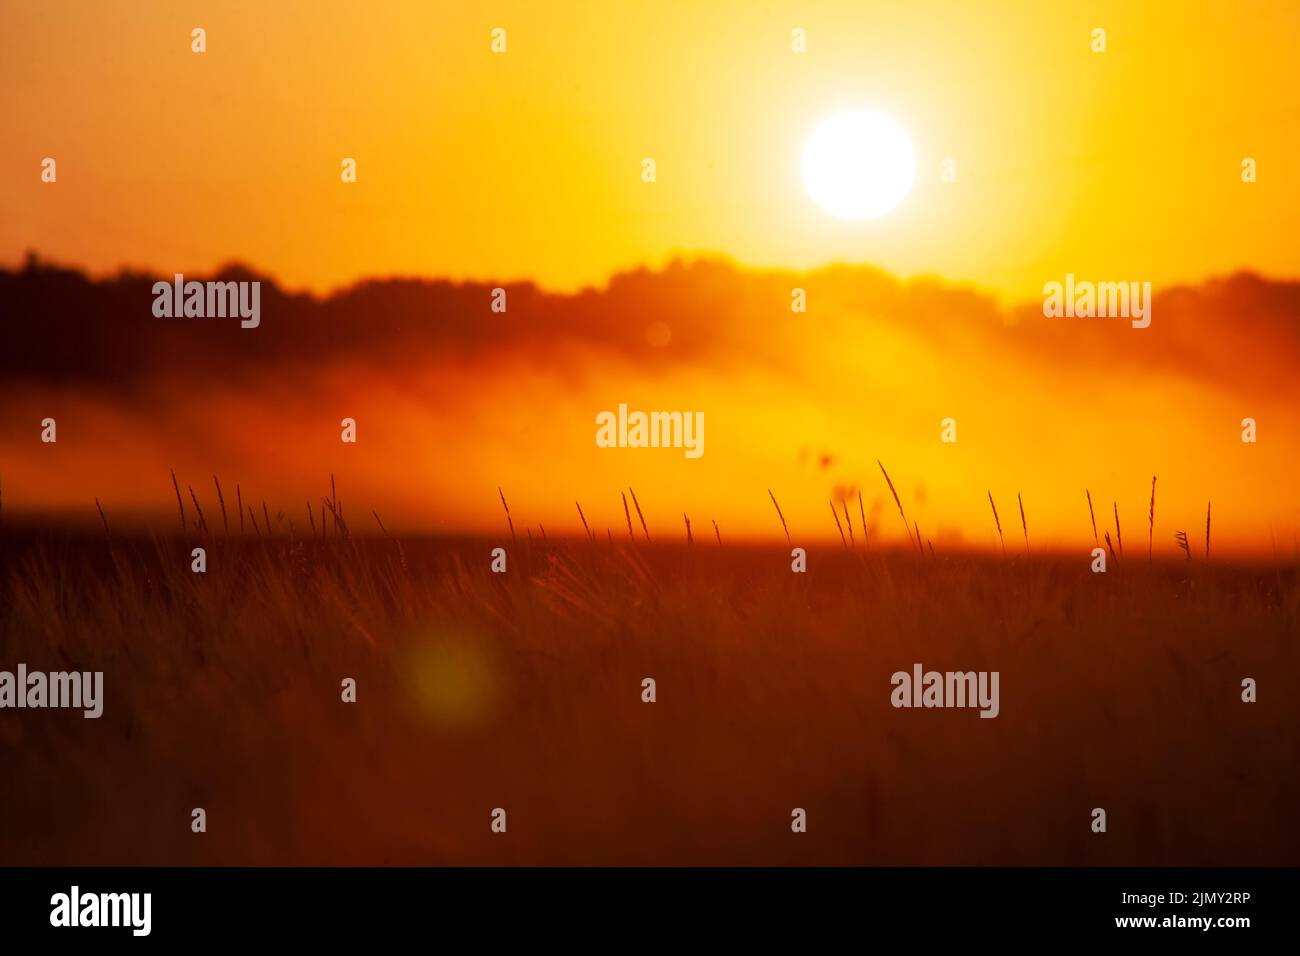 Sfocate lo sfondo del campo con un tramonto arancione e rosso. Foto Stock